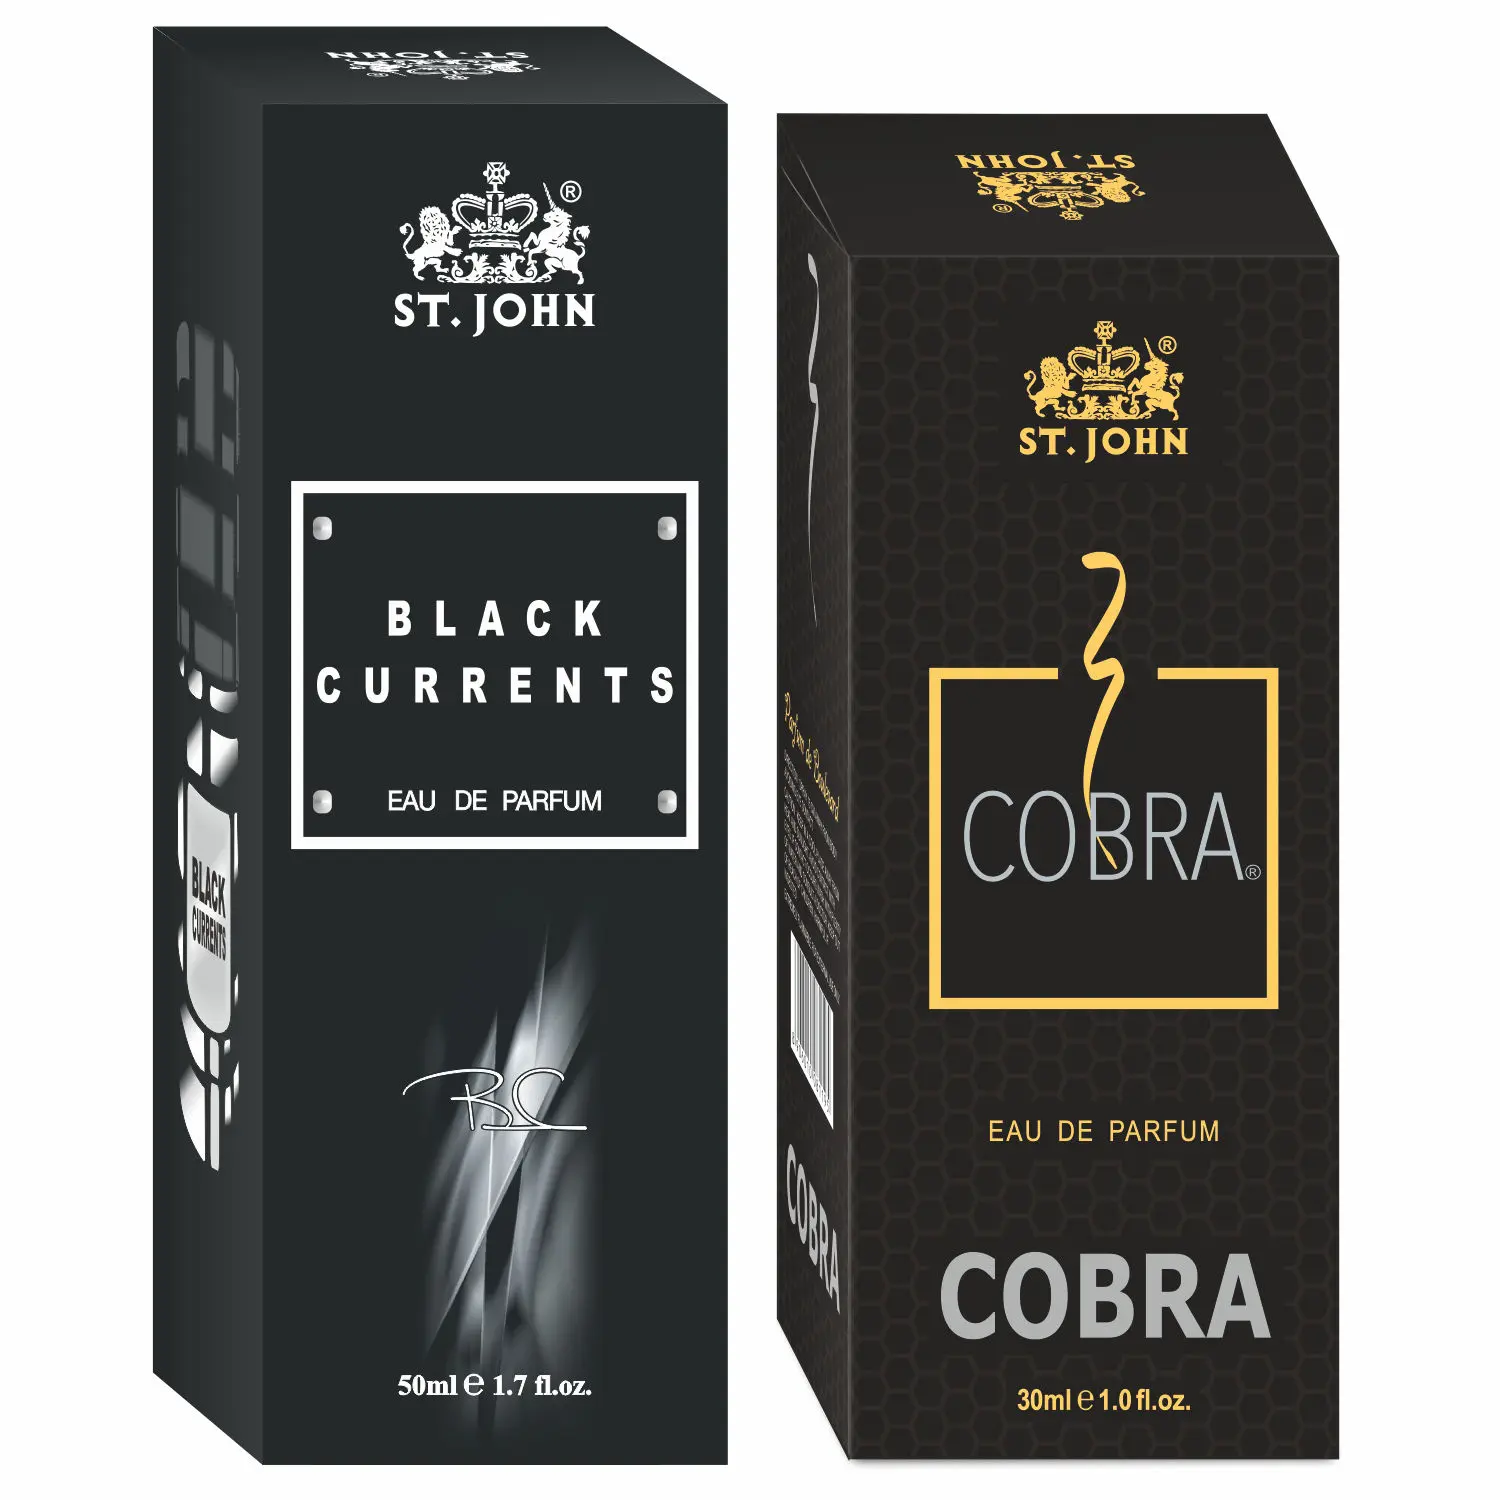 ST-JOHN Cobra 30ml & Black Current 50ml Body Perfume Combo Gift Pack Eau de Parfum - 80 ml (For Men & Women)